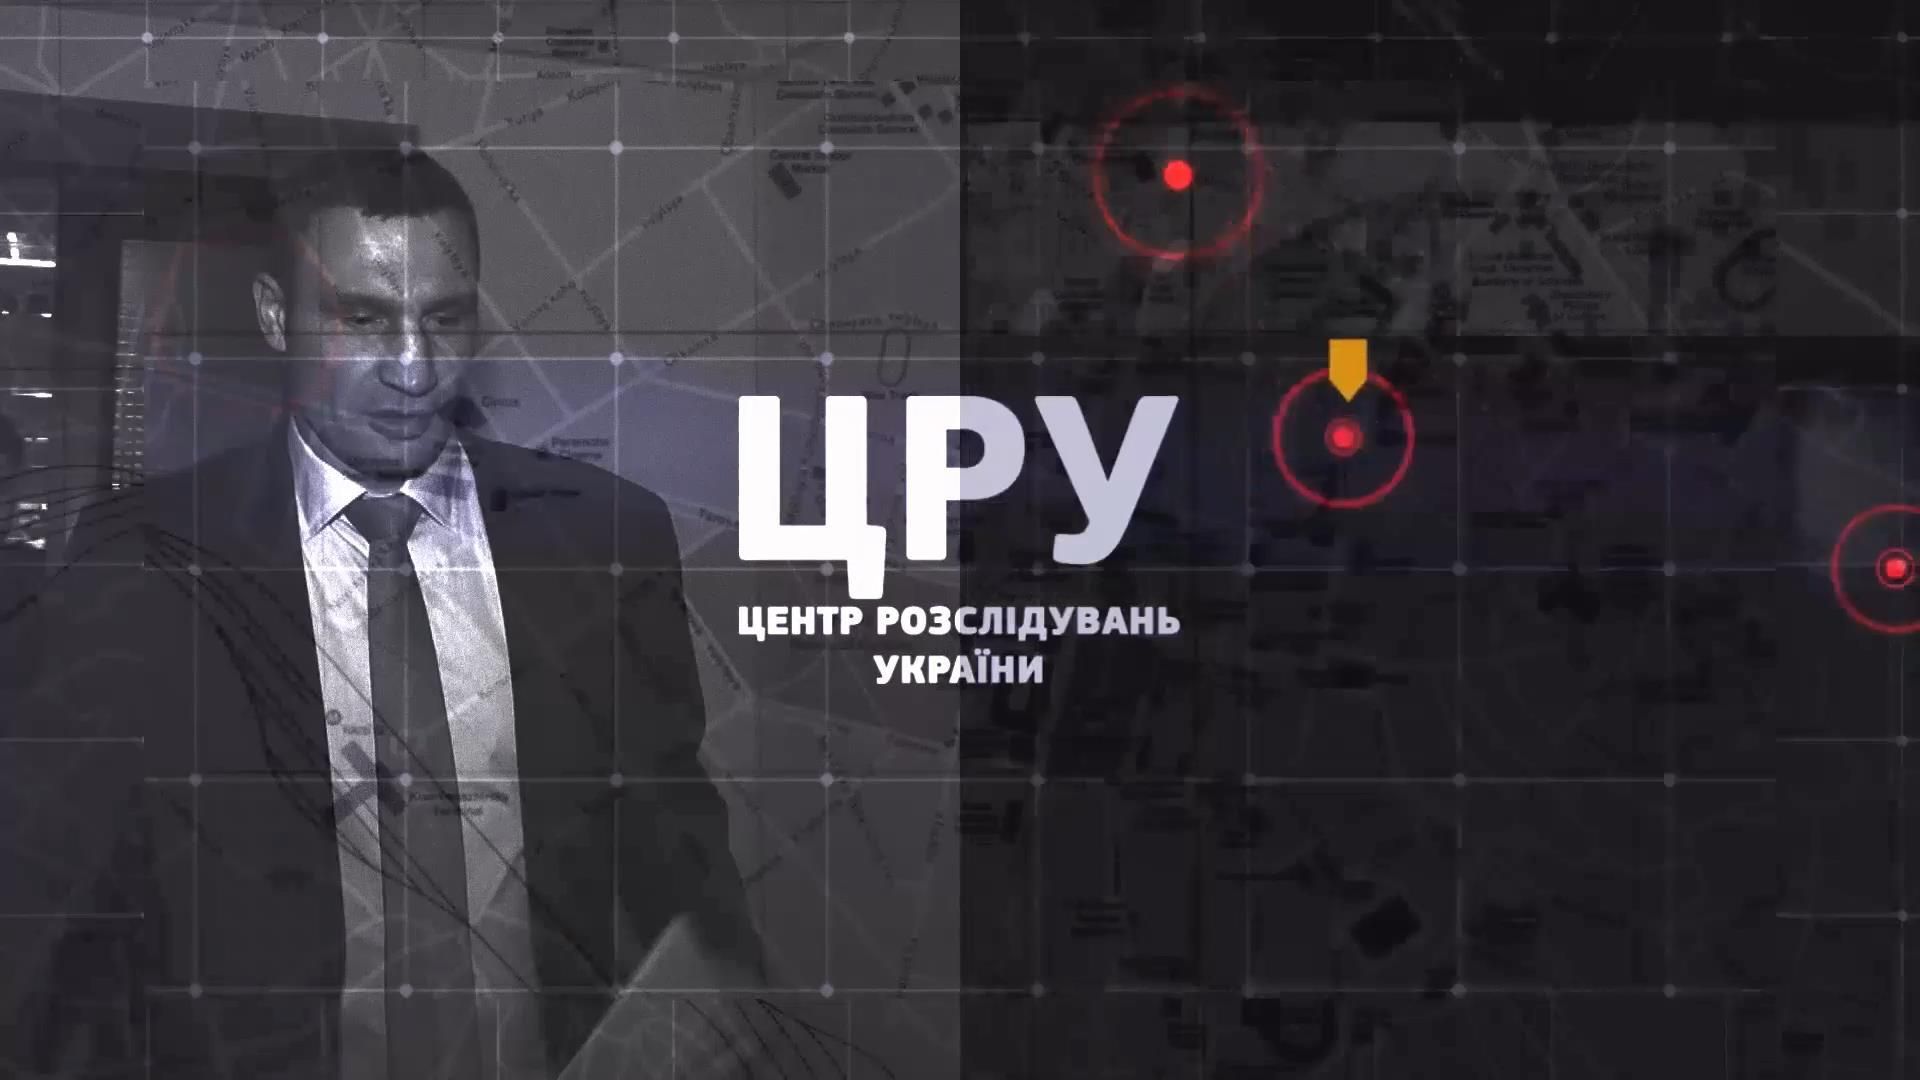 Как Кличко и компания застраивают столицу торговыми центрами за счет киевлян, – смотрите в "ЦРУ"